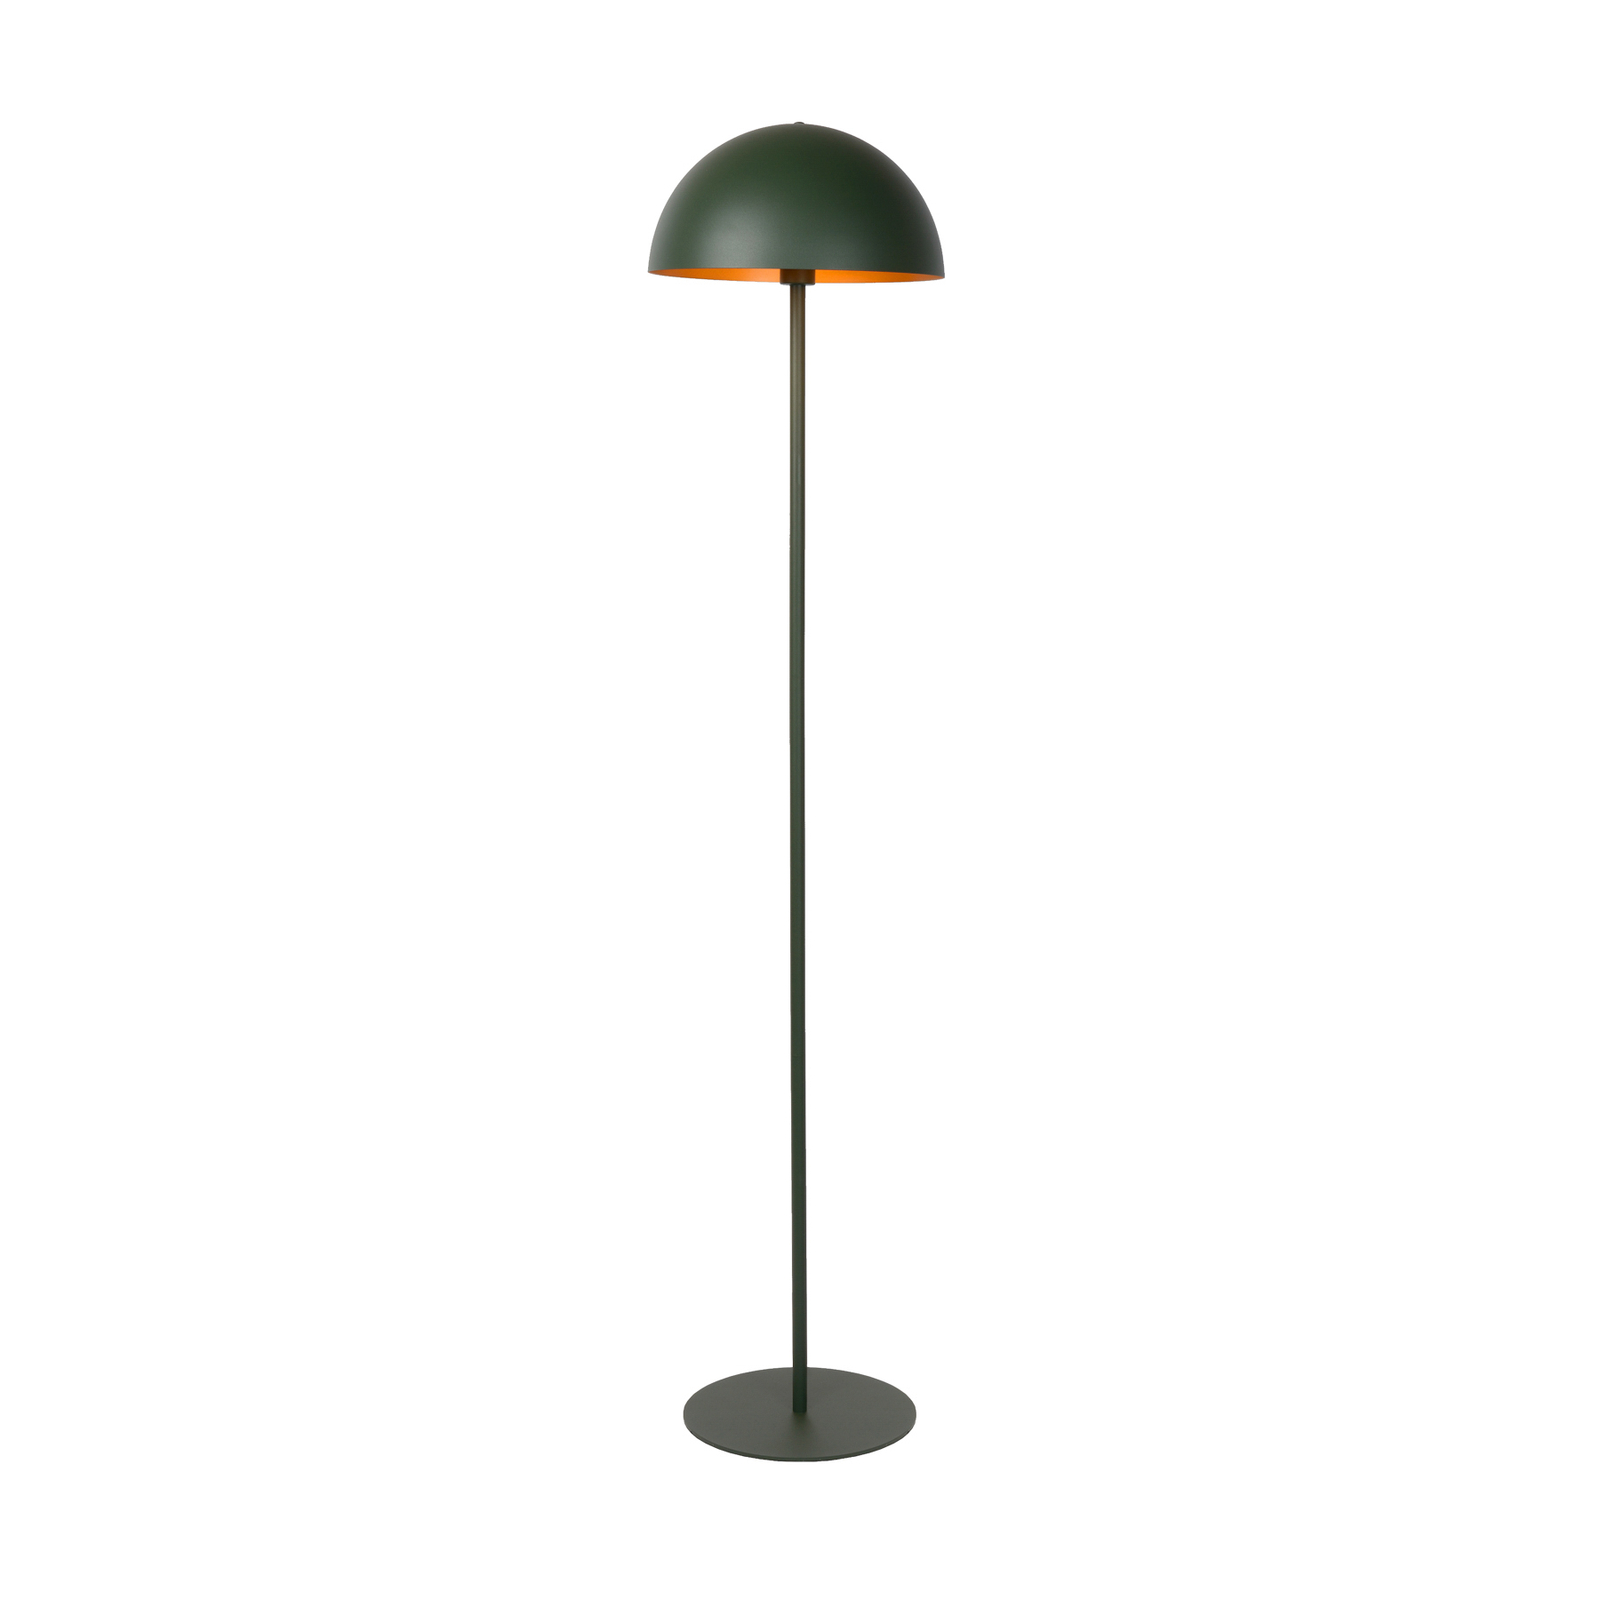 Lampa stojąca Siemon ze stali, Ø 35 cm, zielona